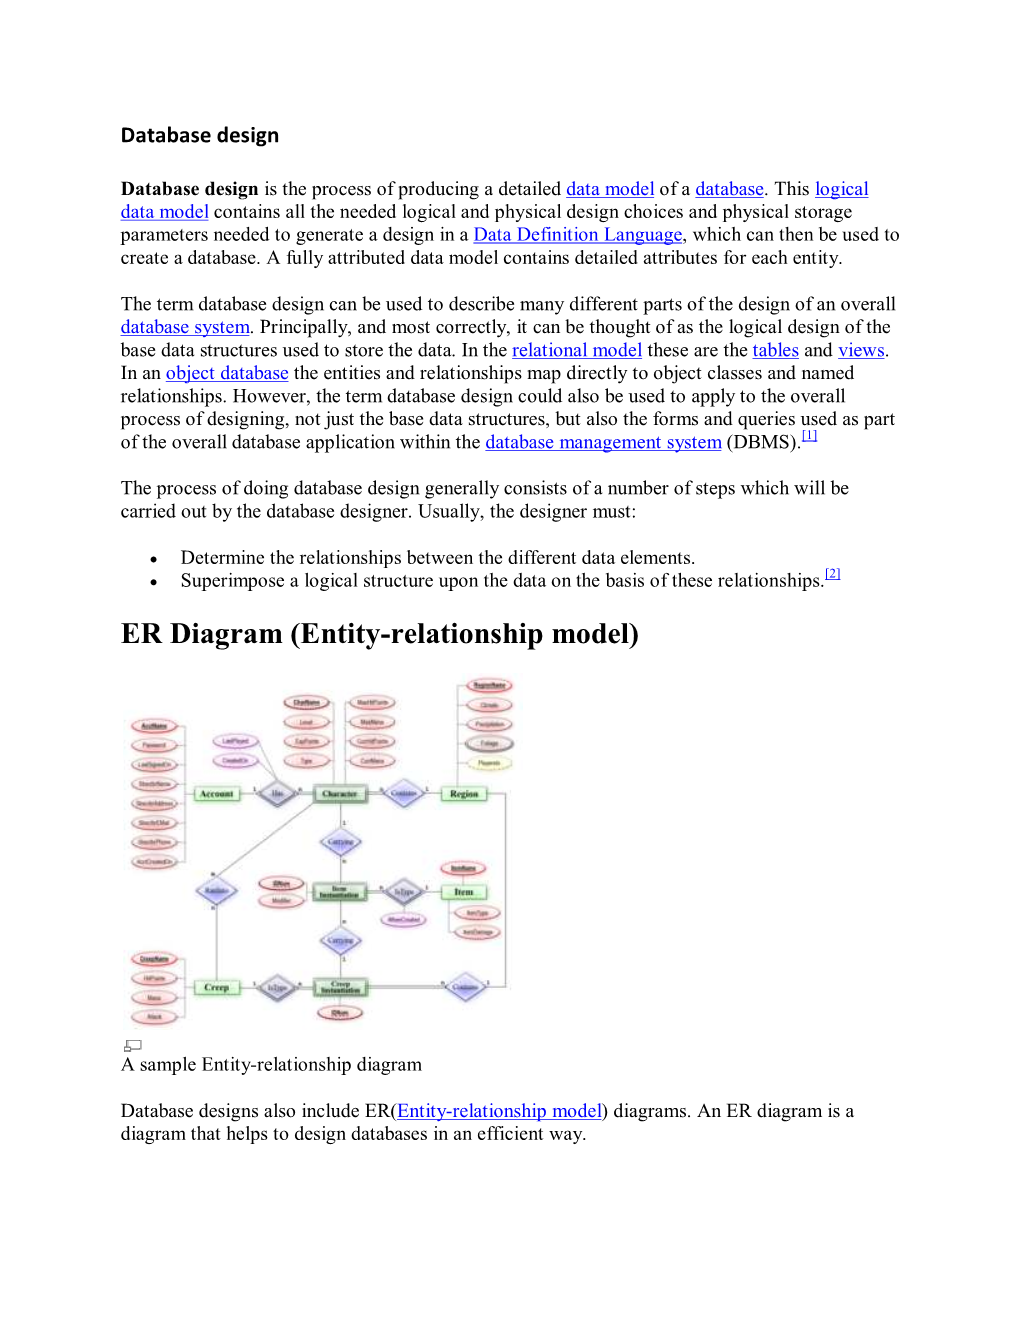 ER Diagram (Entity-Relationship Model)